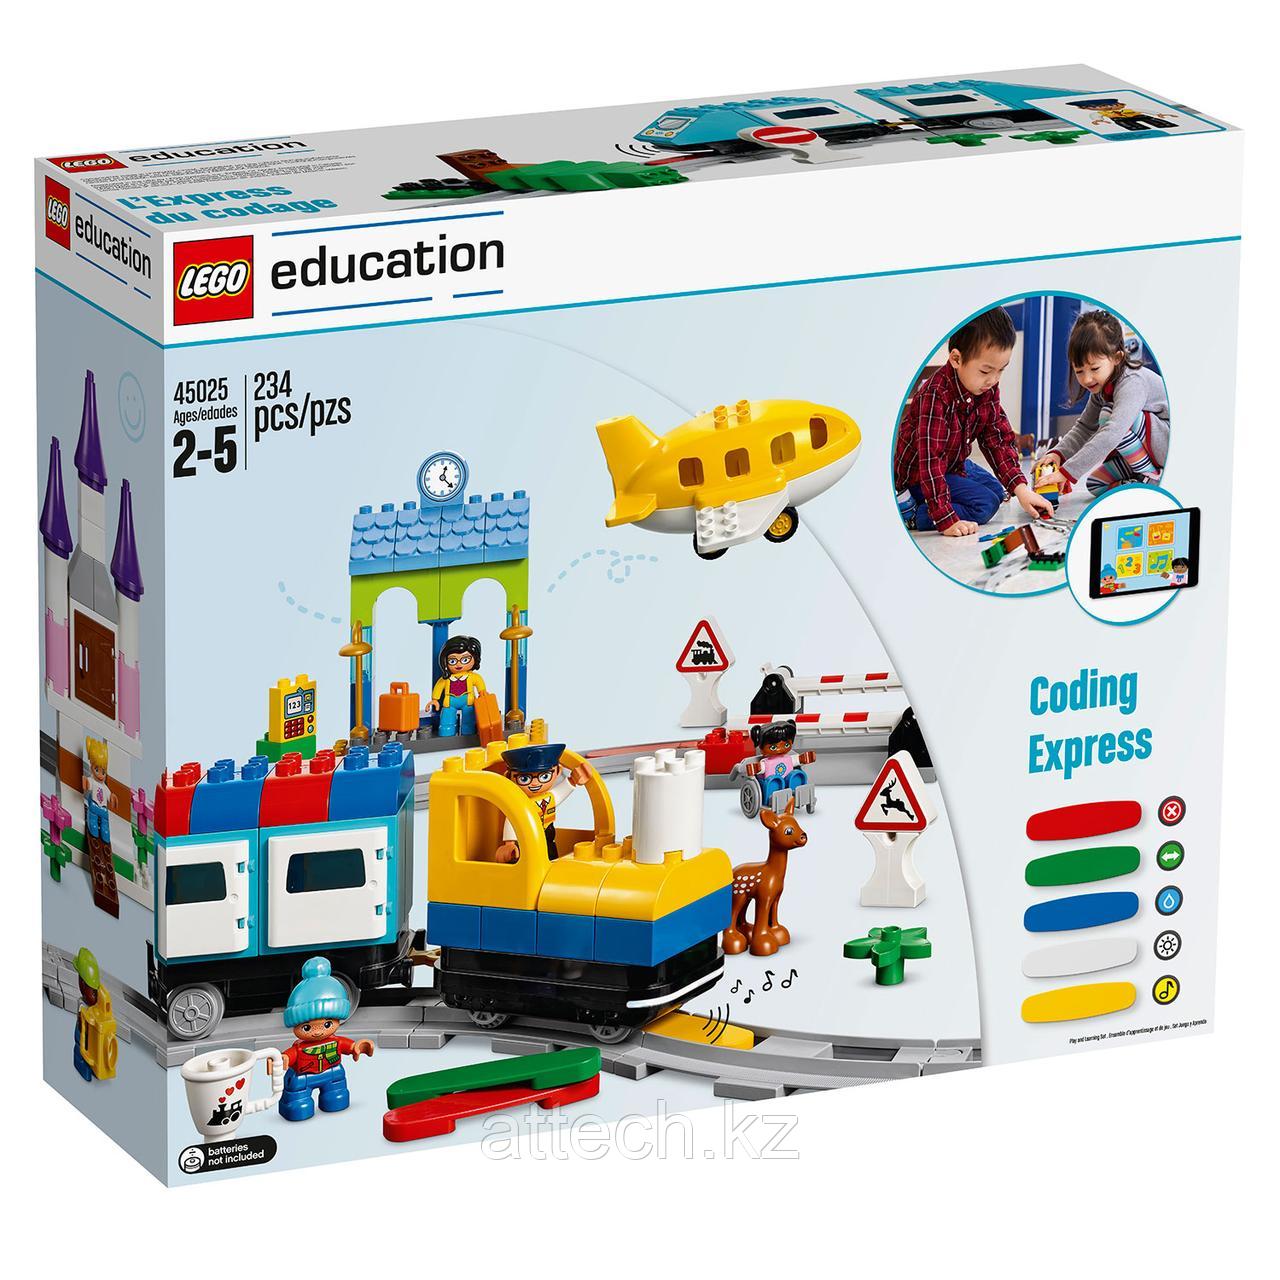 45025 LEGO Education Экспресс Юный программист